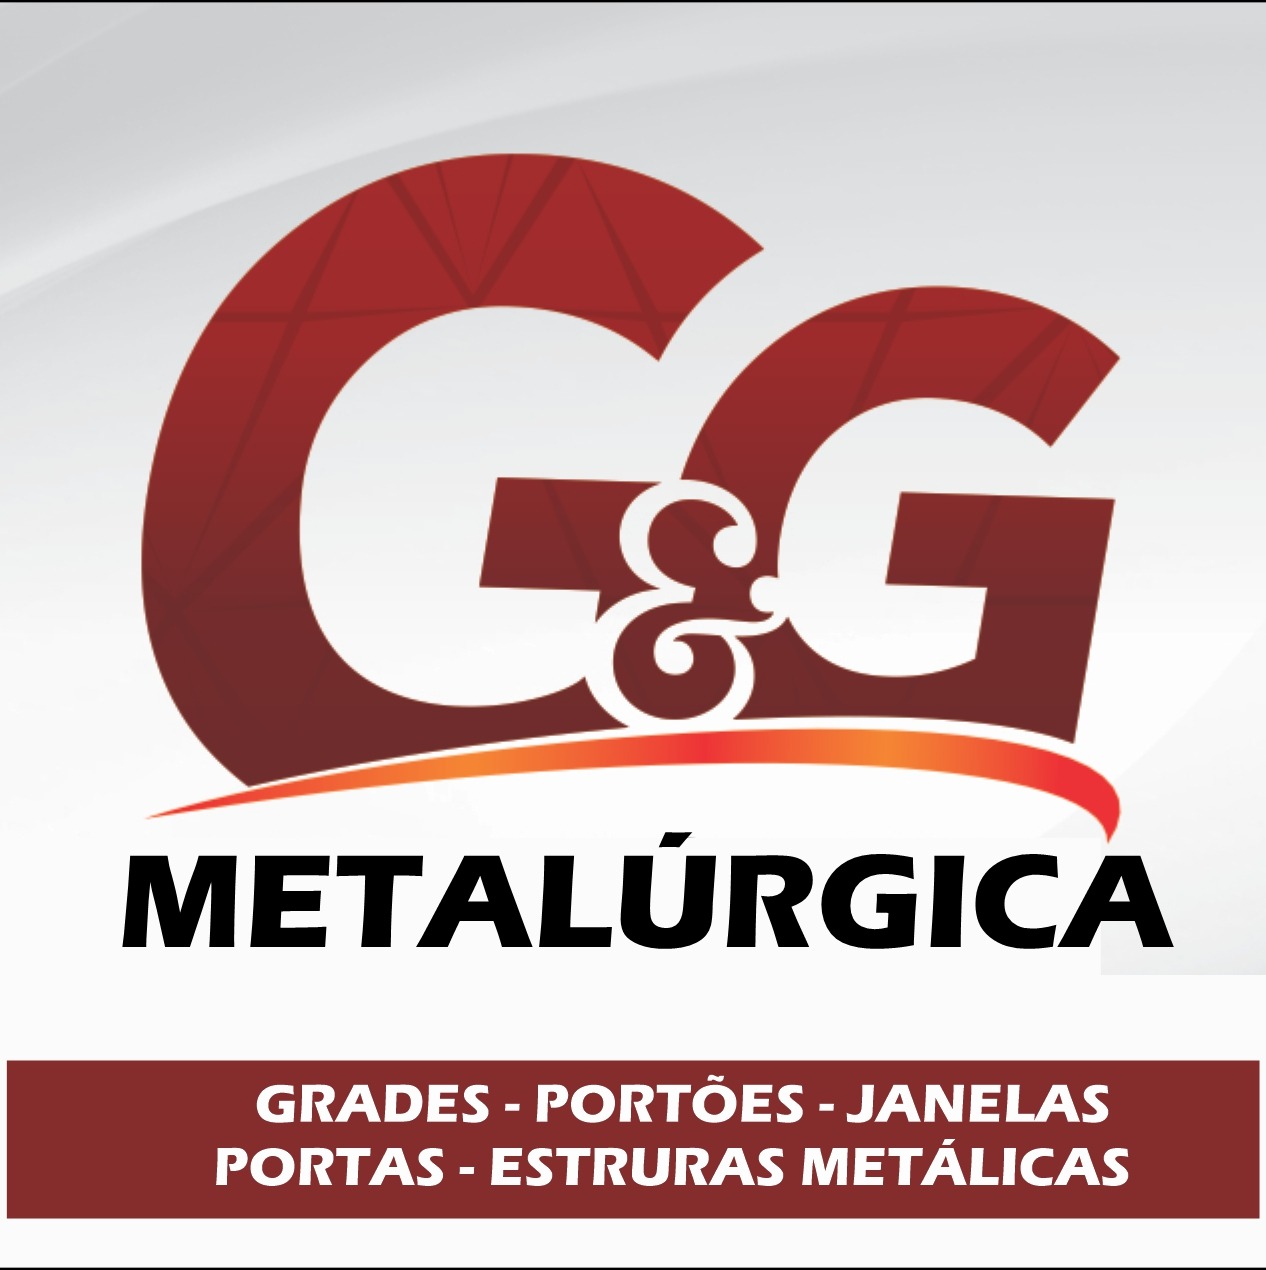 GeG Metalúrgica 